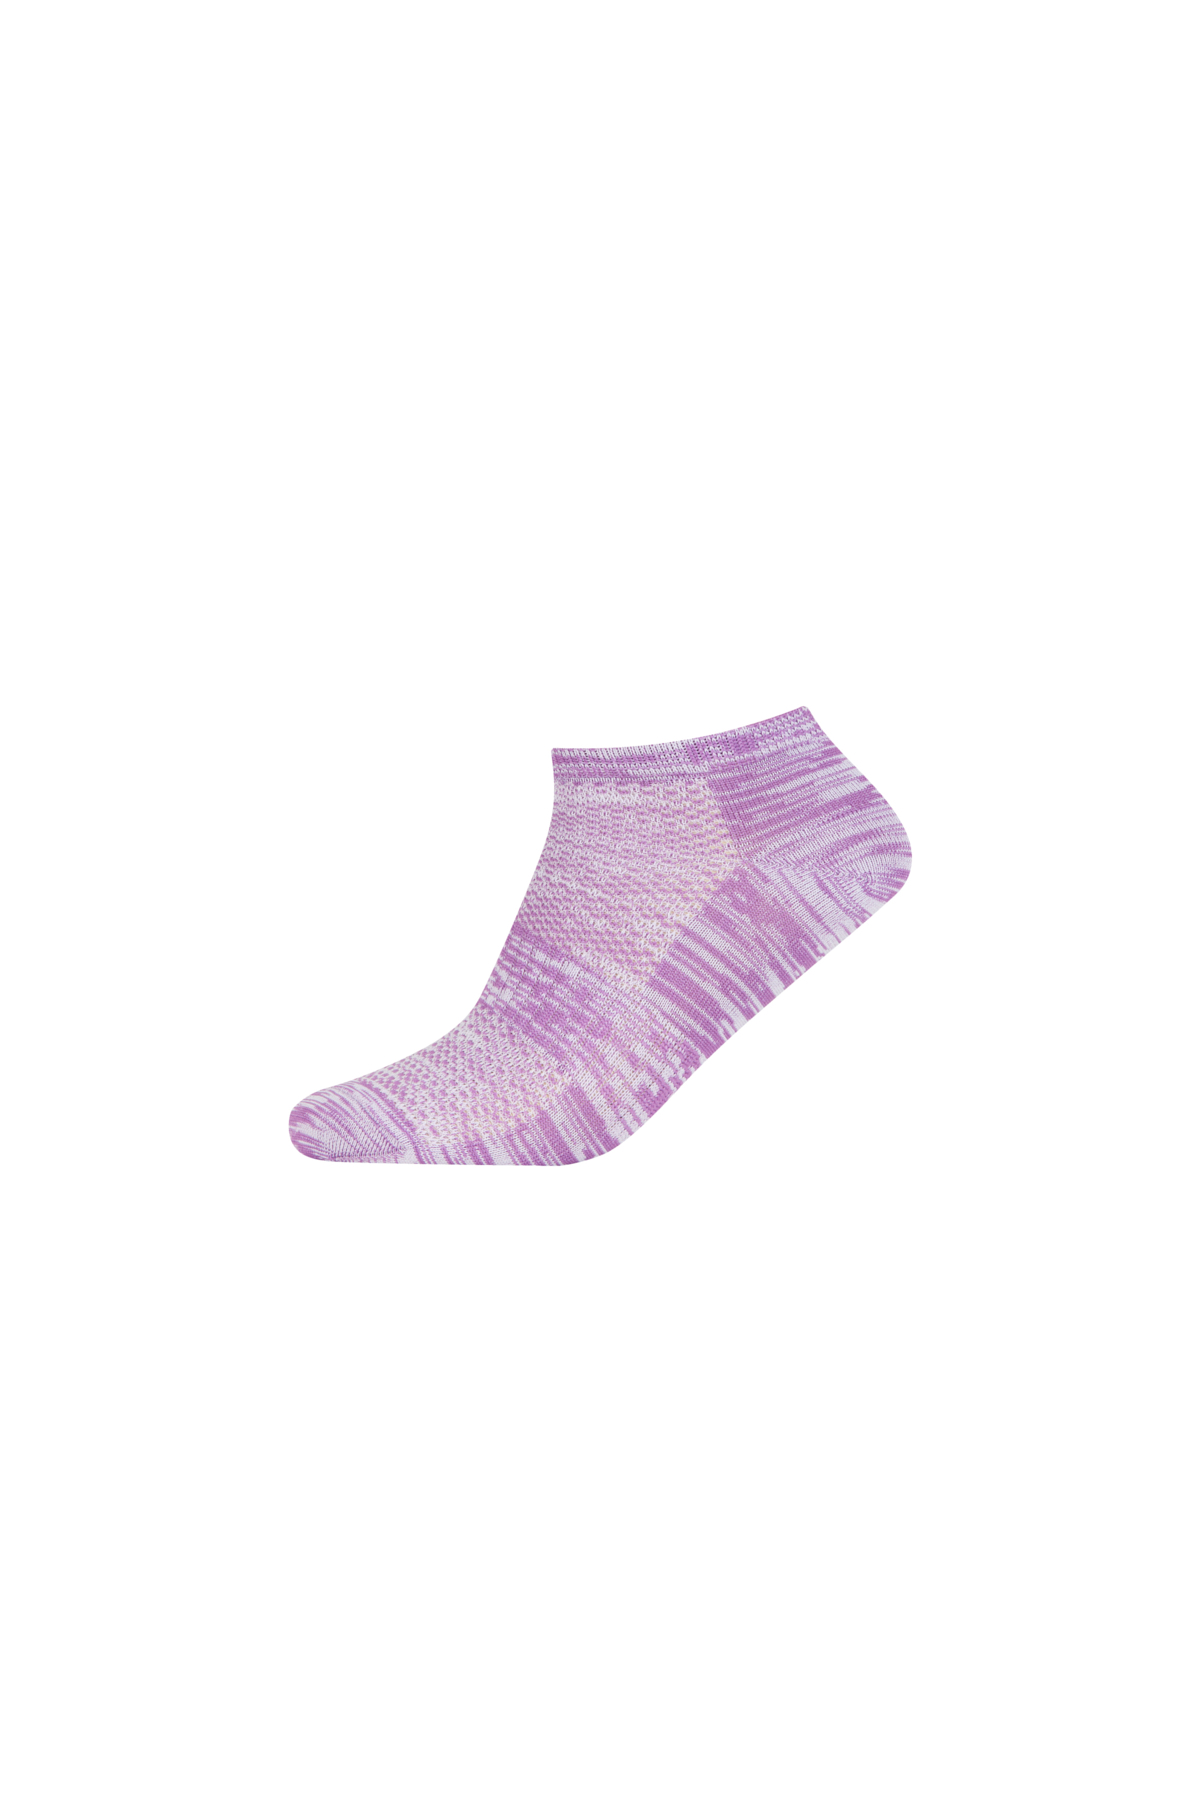 Kadın Topuk Burun Takviyeli Spor Patik Çorap